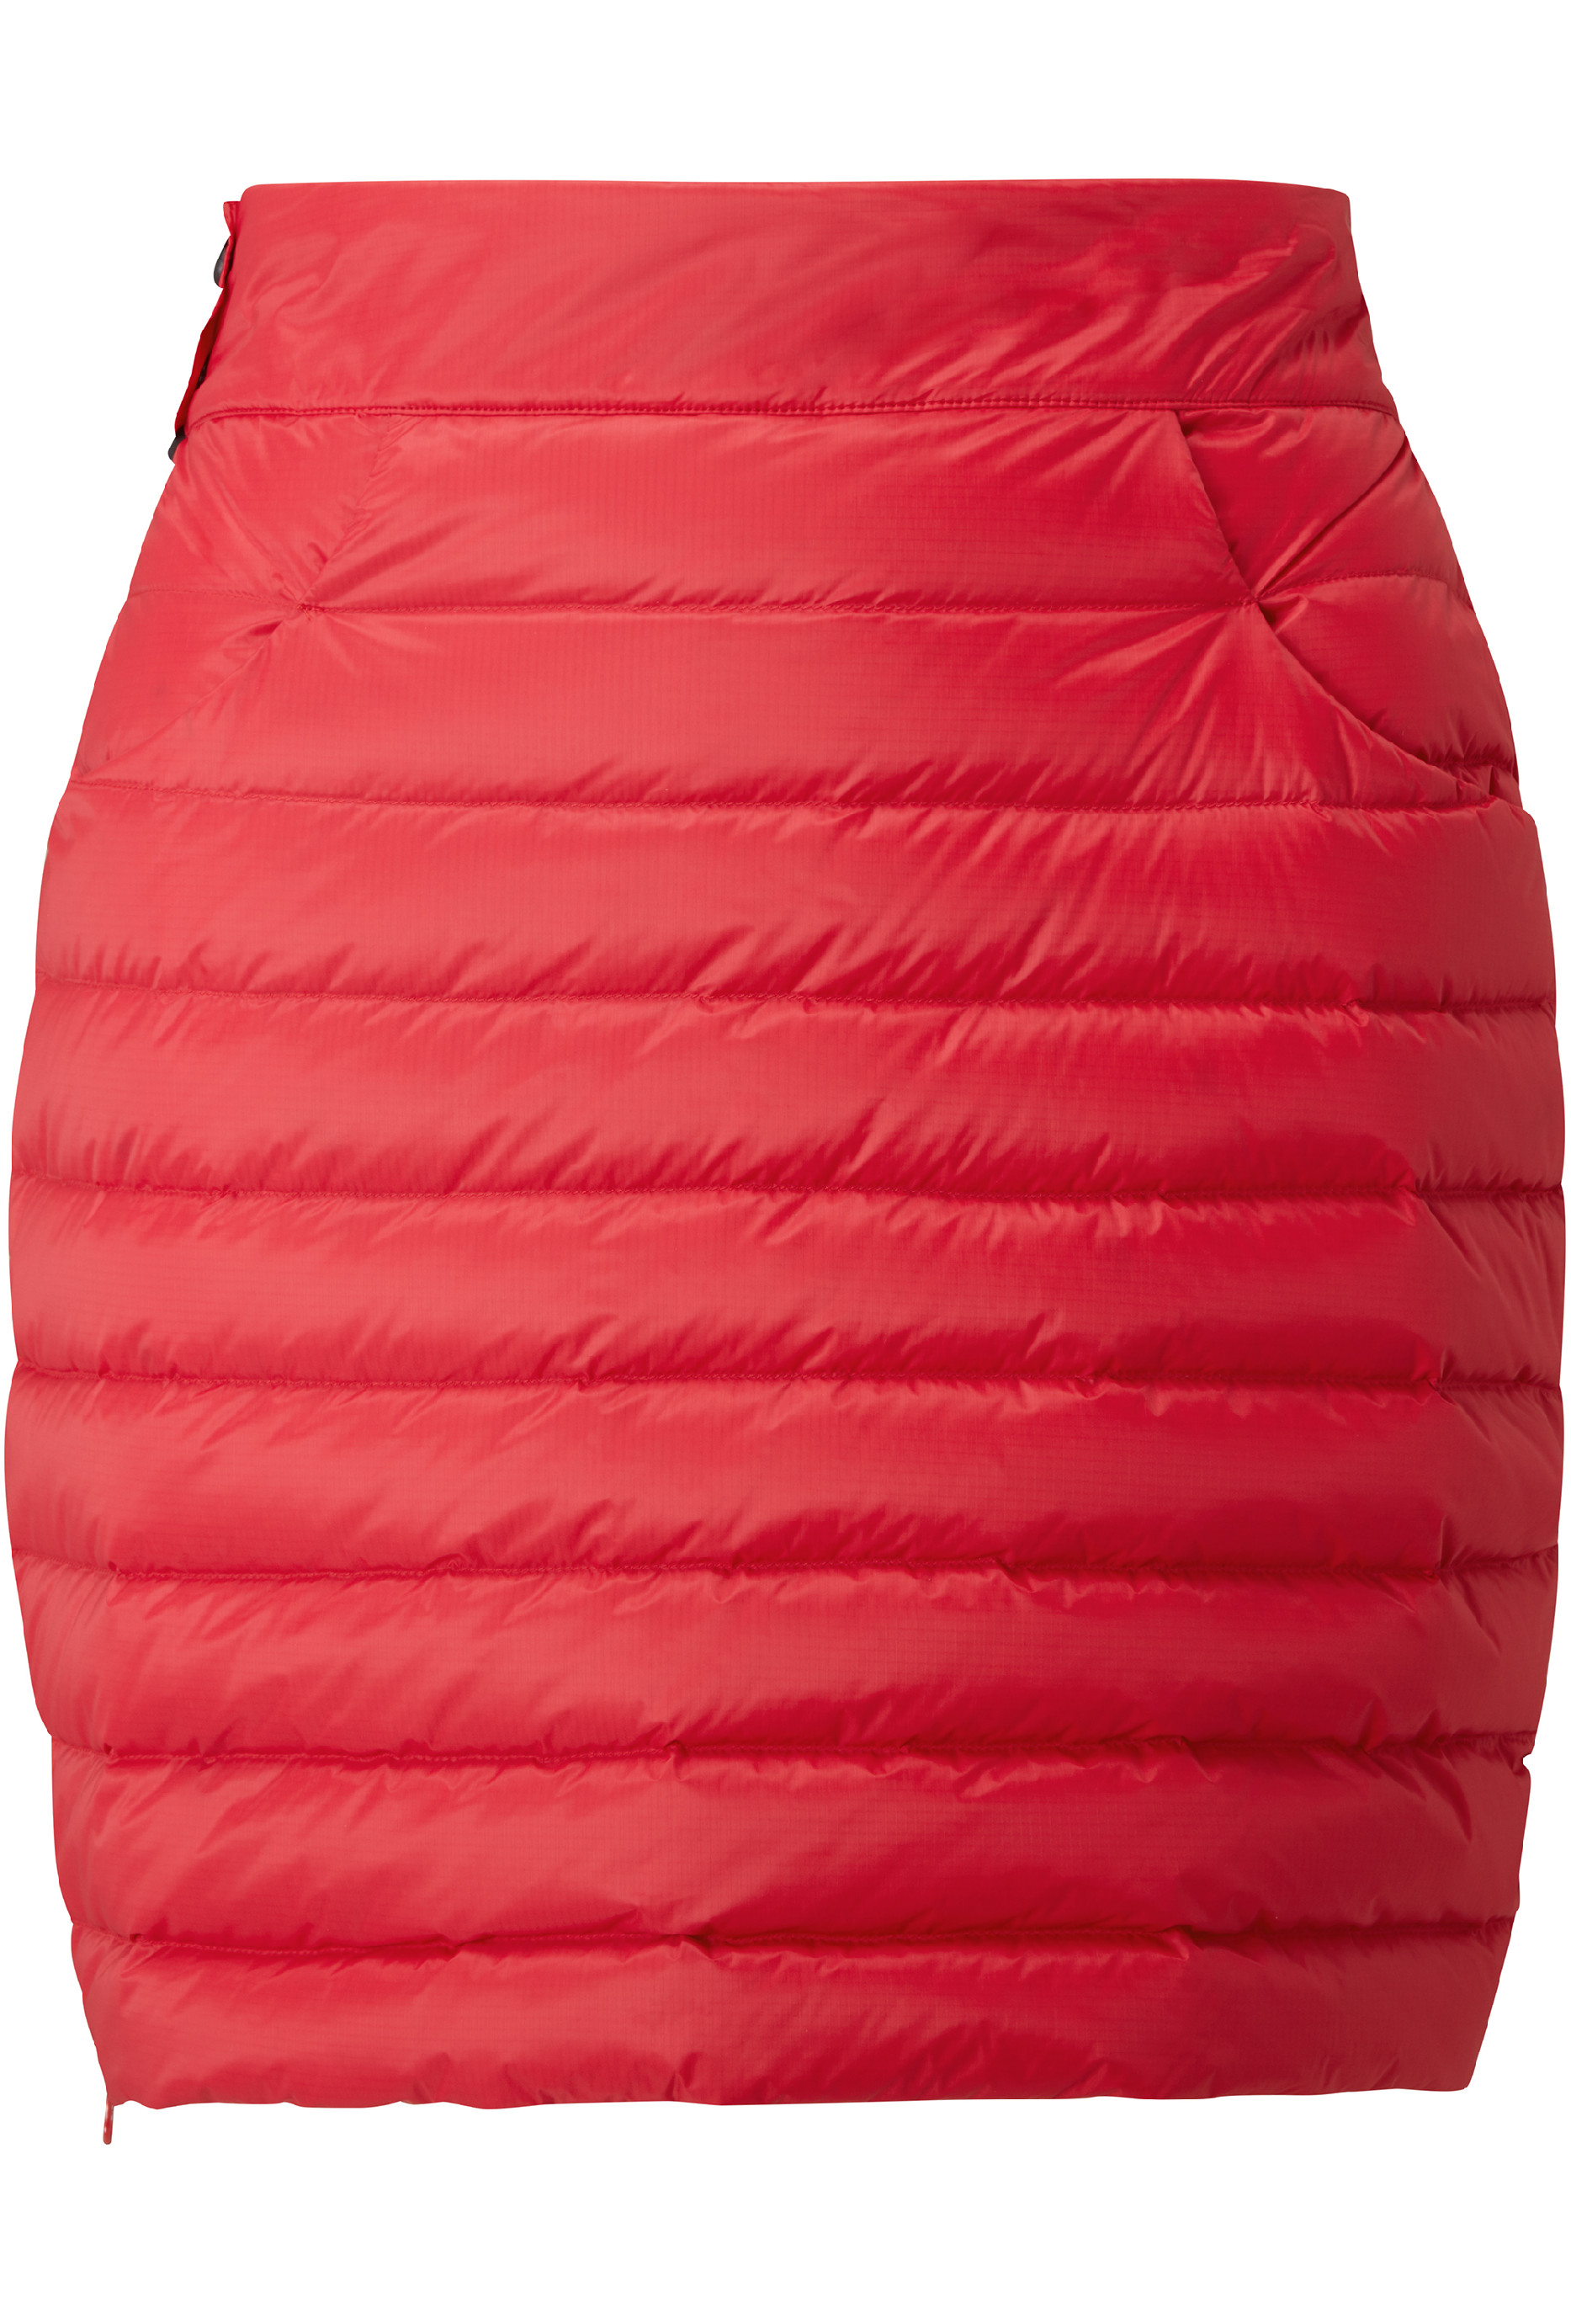 Mountain Equipment dámská péřová sukně Frostline Wmns Skirt Barva: Capsicum Red, Velikost: 8/XS